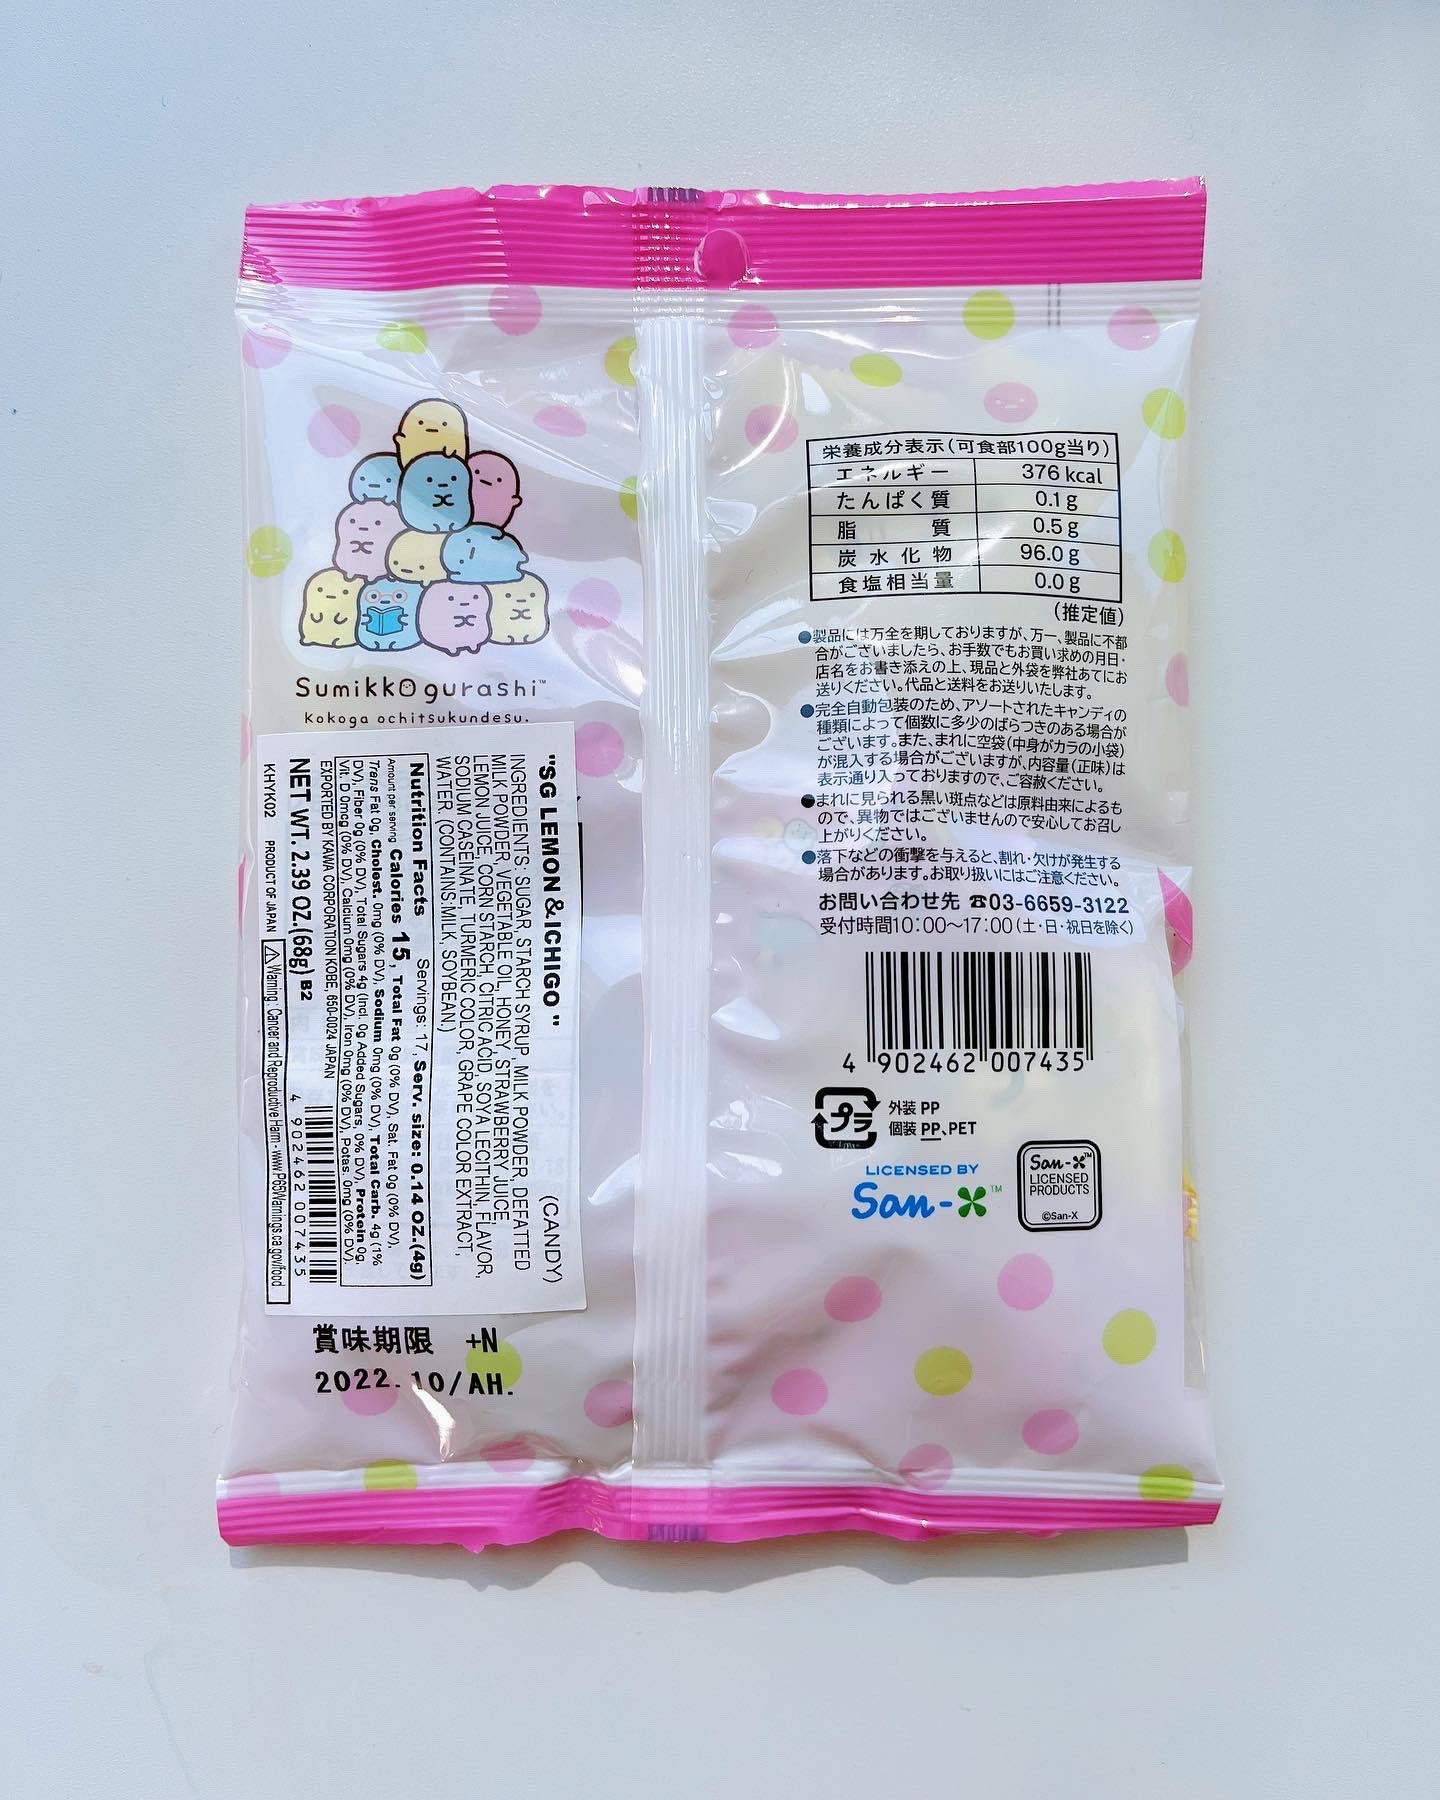 Sumikko Gurashi Candy - Lemon & Strawberry